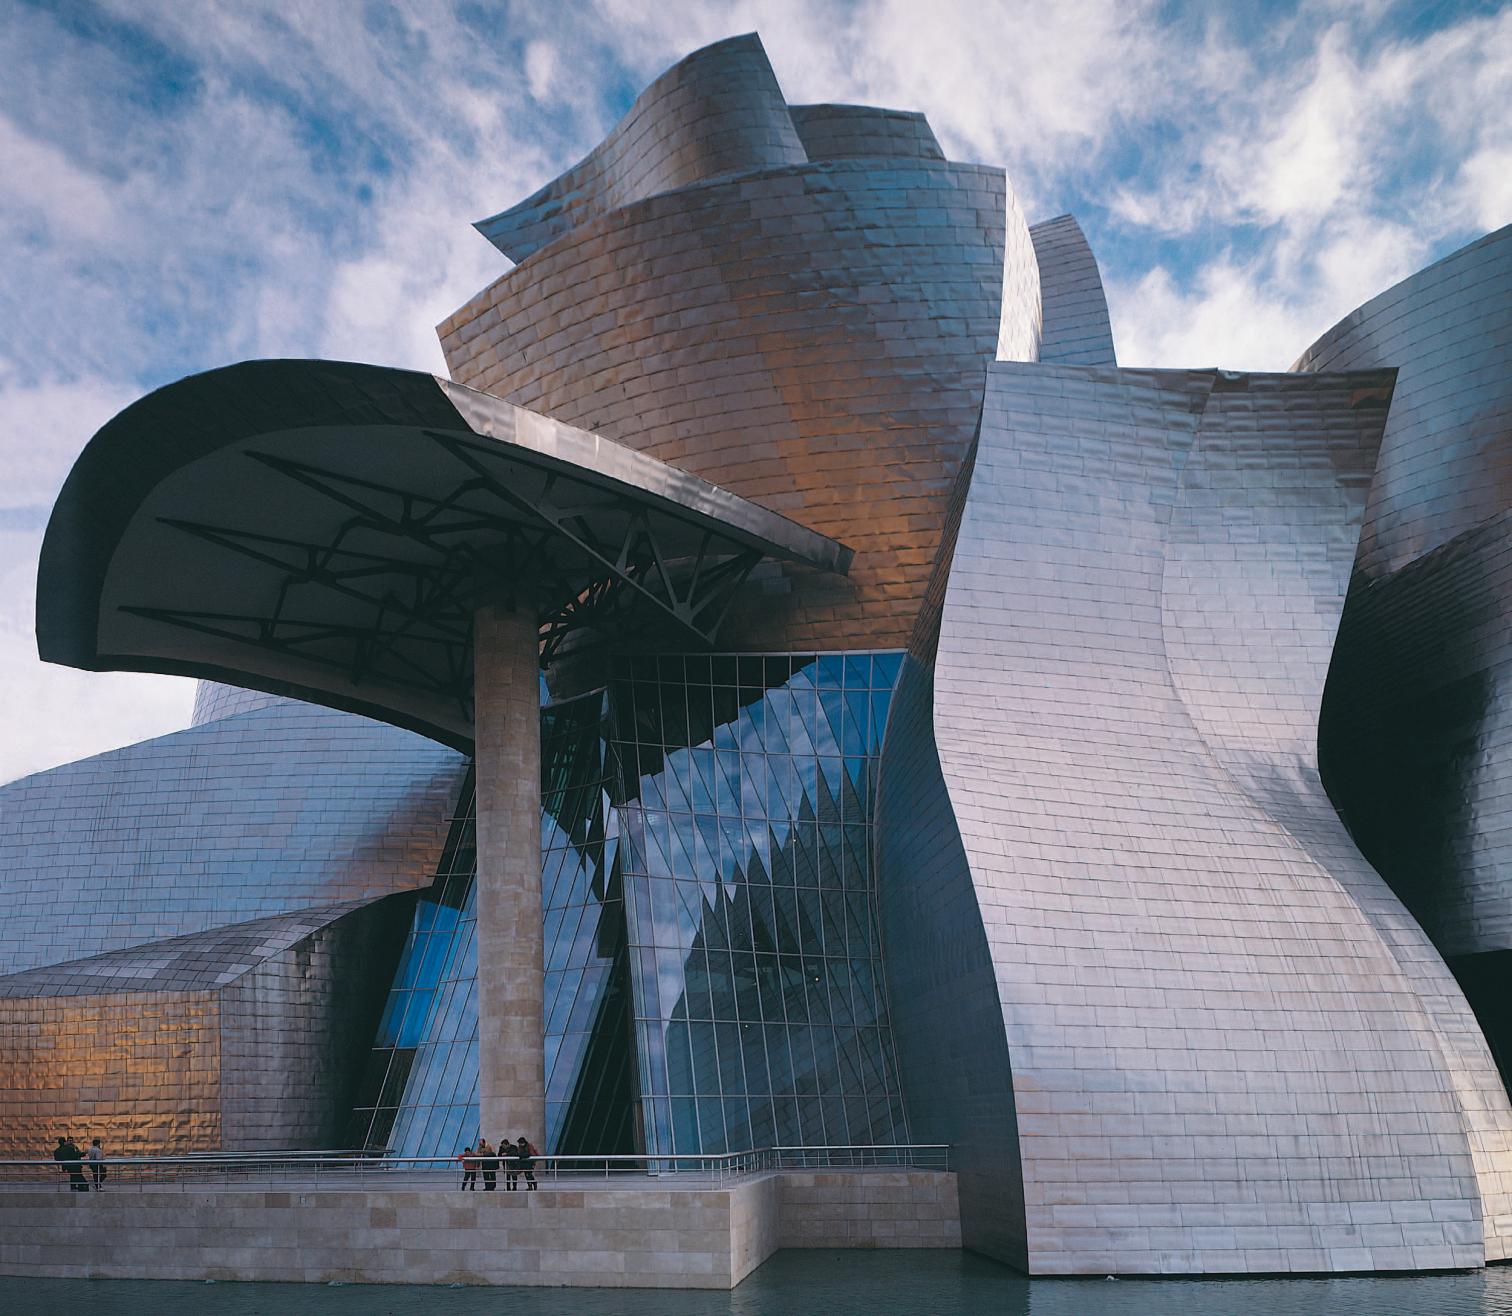 Apenas terminado en 1997, el Museo Guggenheim Bilbao de Frank Gehry ingresó en la colección de iconos contemporáneos, y sus formas tormentosas y alabeadas sustituyeron a las fracturadas como símbolo de unos tiempos inciertos.